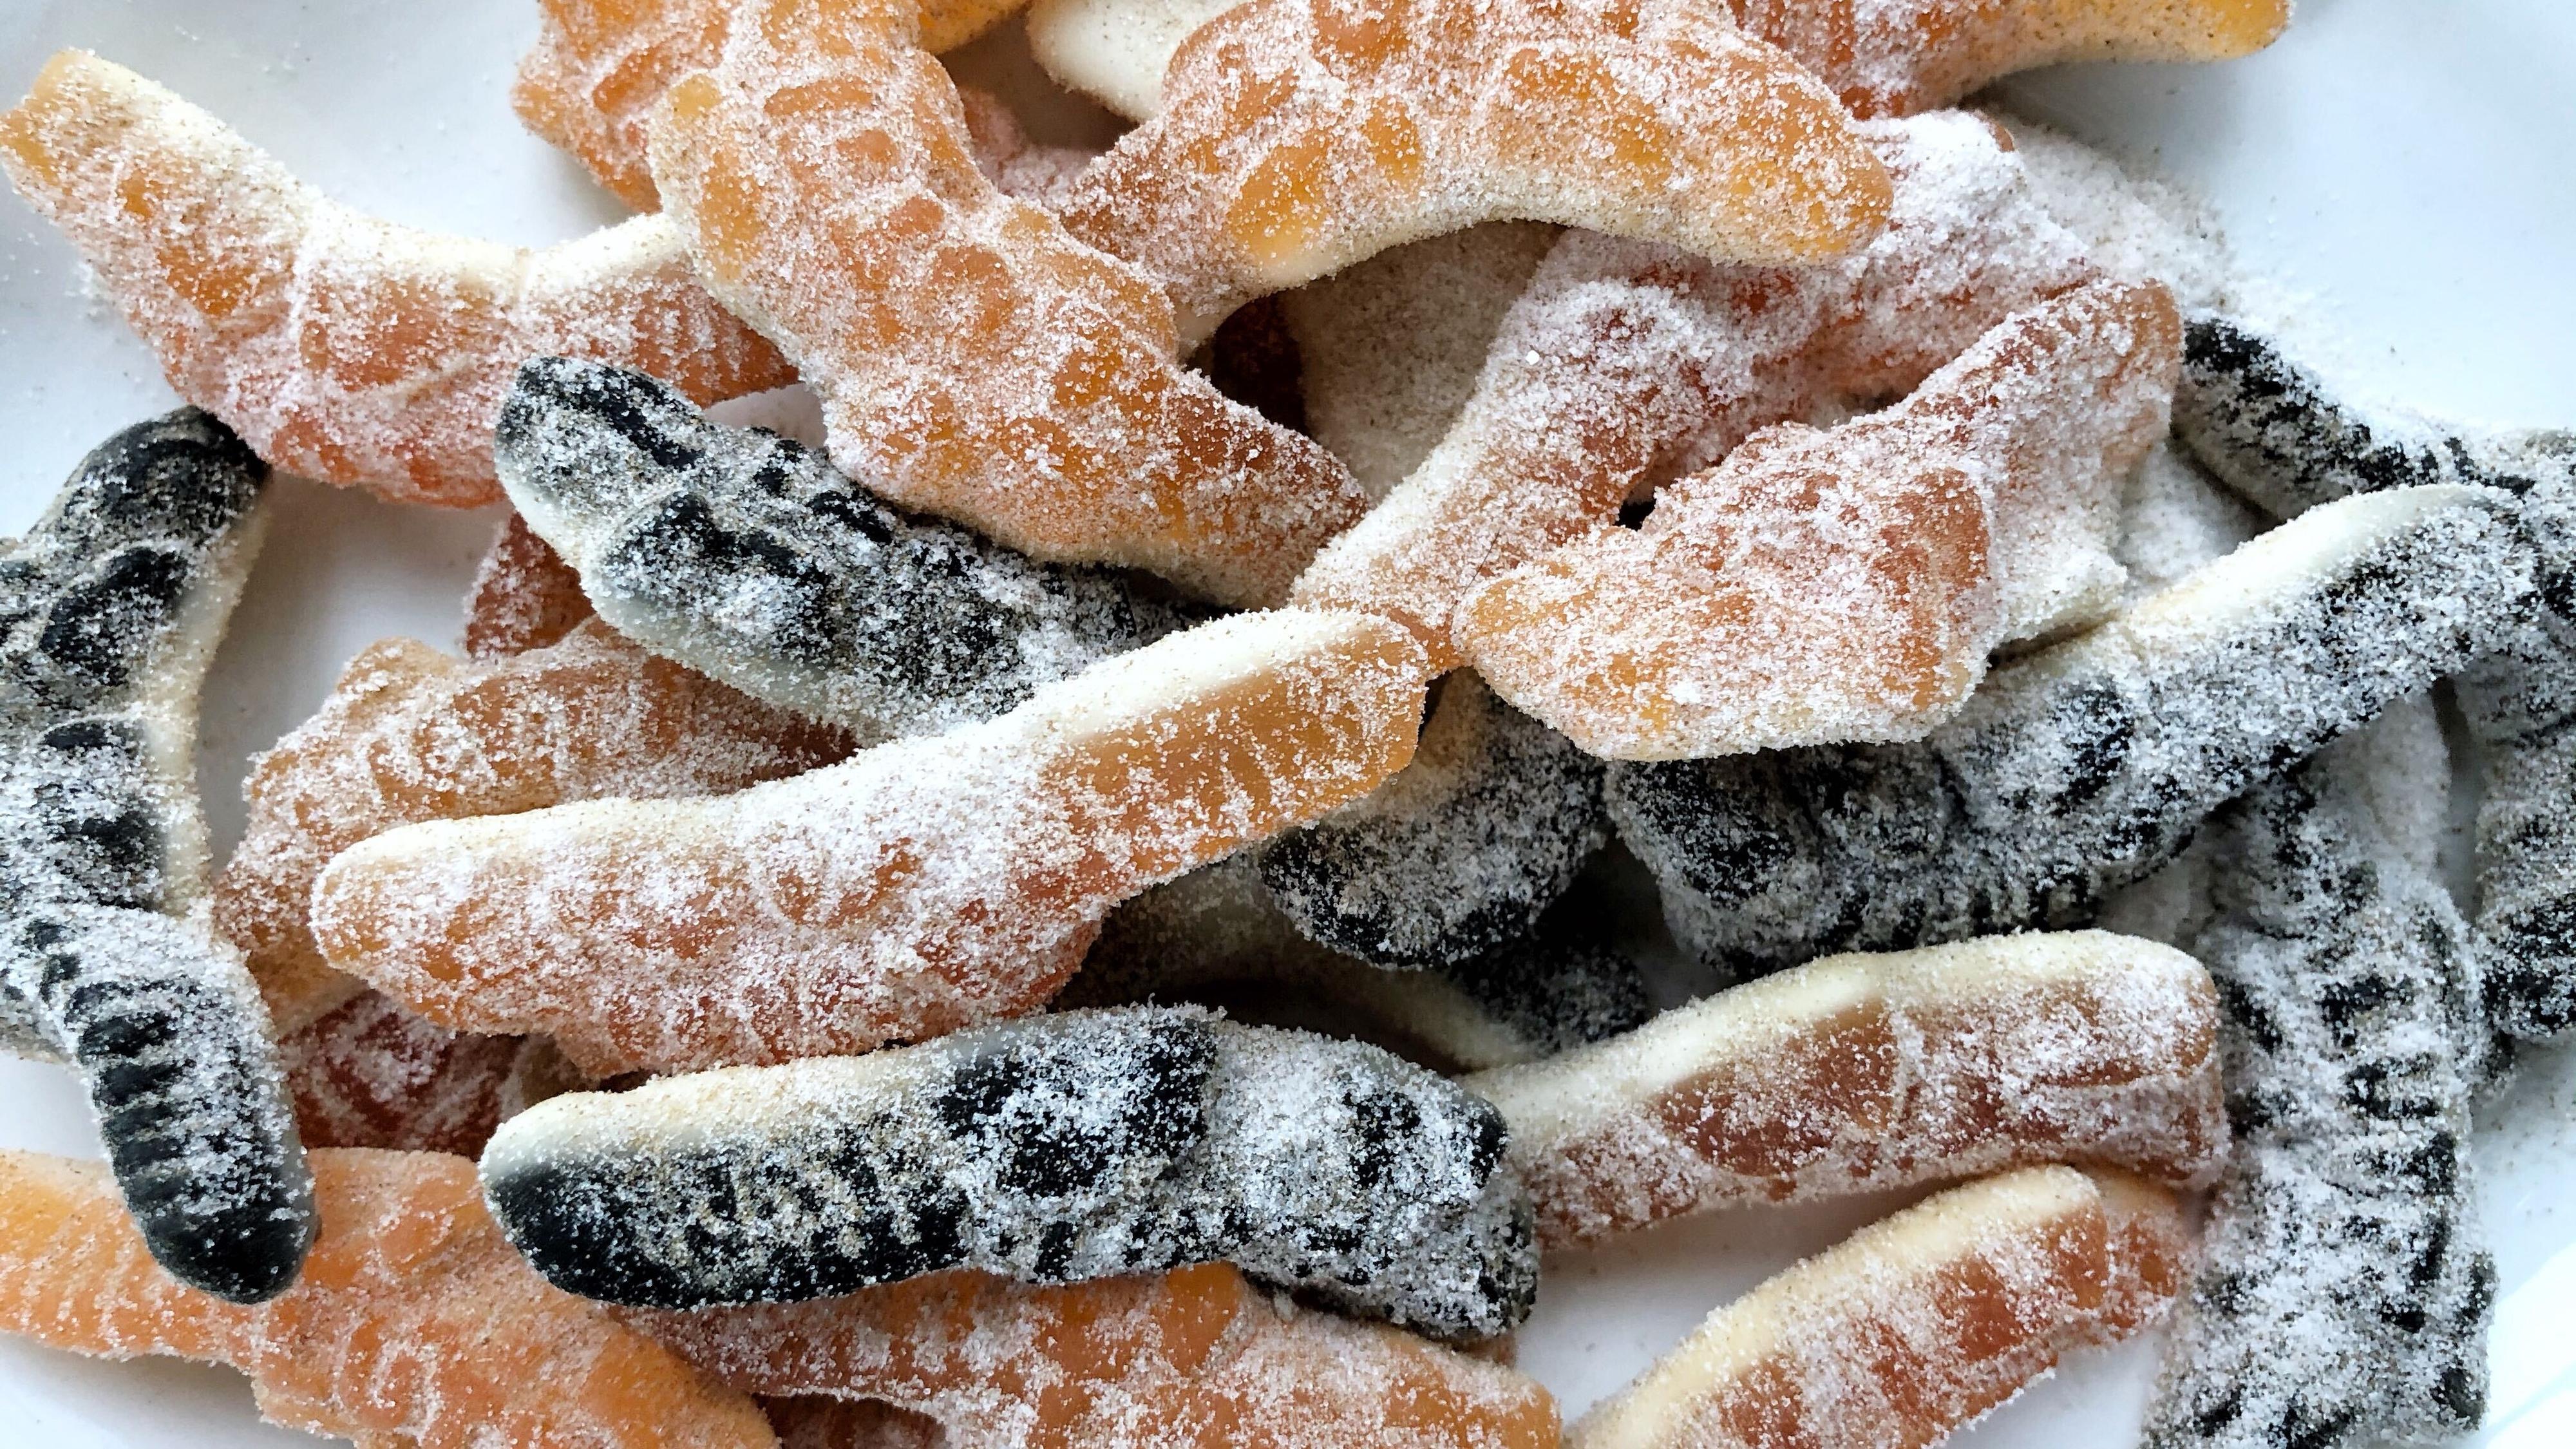 SØT EKSPLOSJON: Salget av de to godteriene Hockeypulver og krokodiller har eksplodert, melder matvarekjedene.